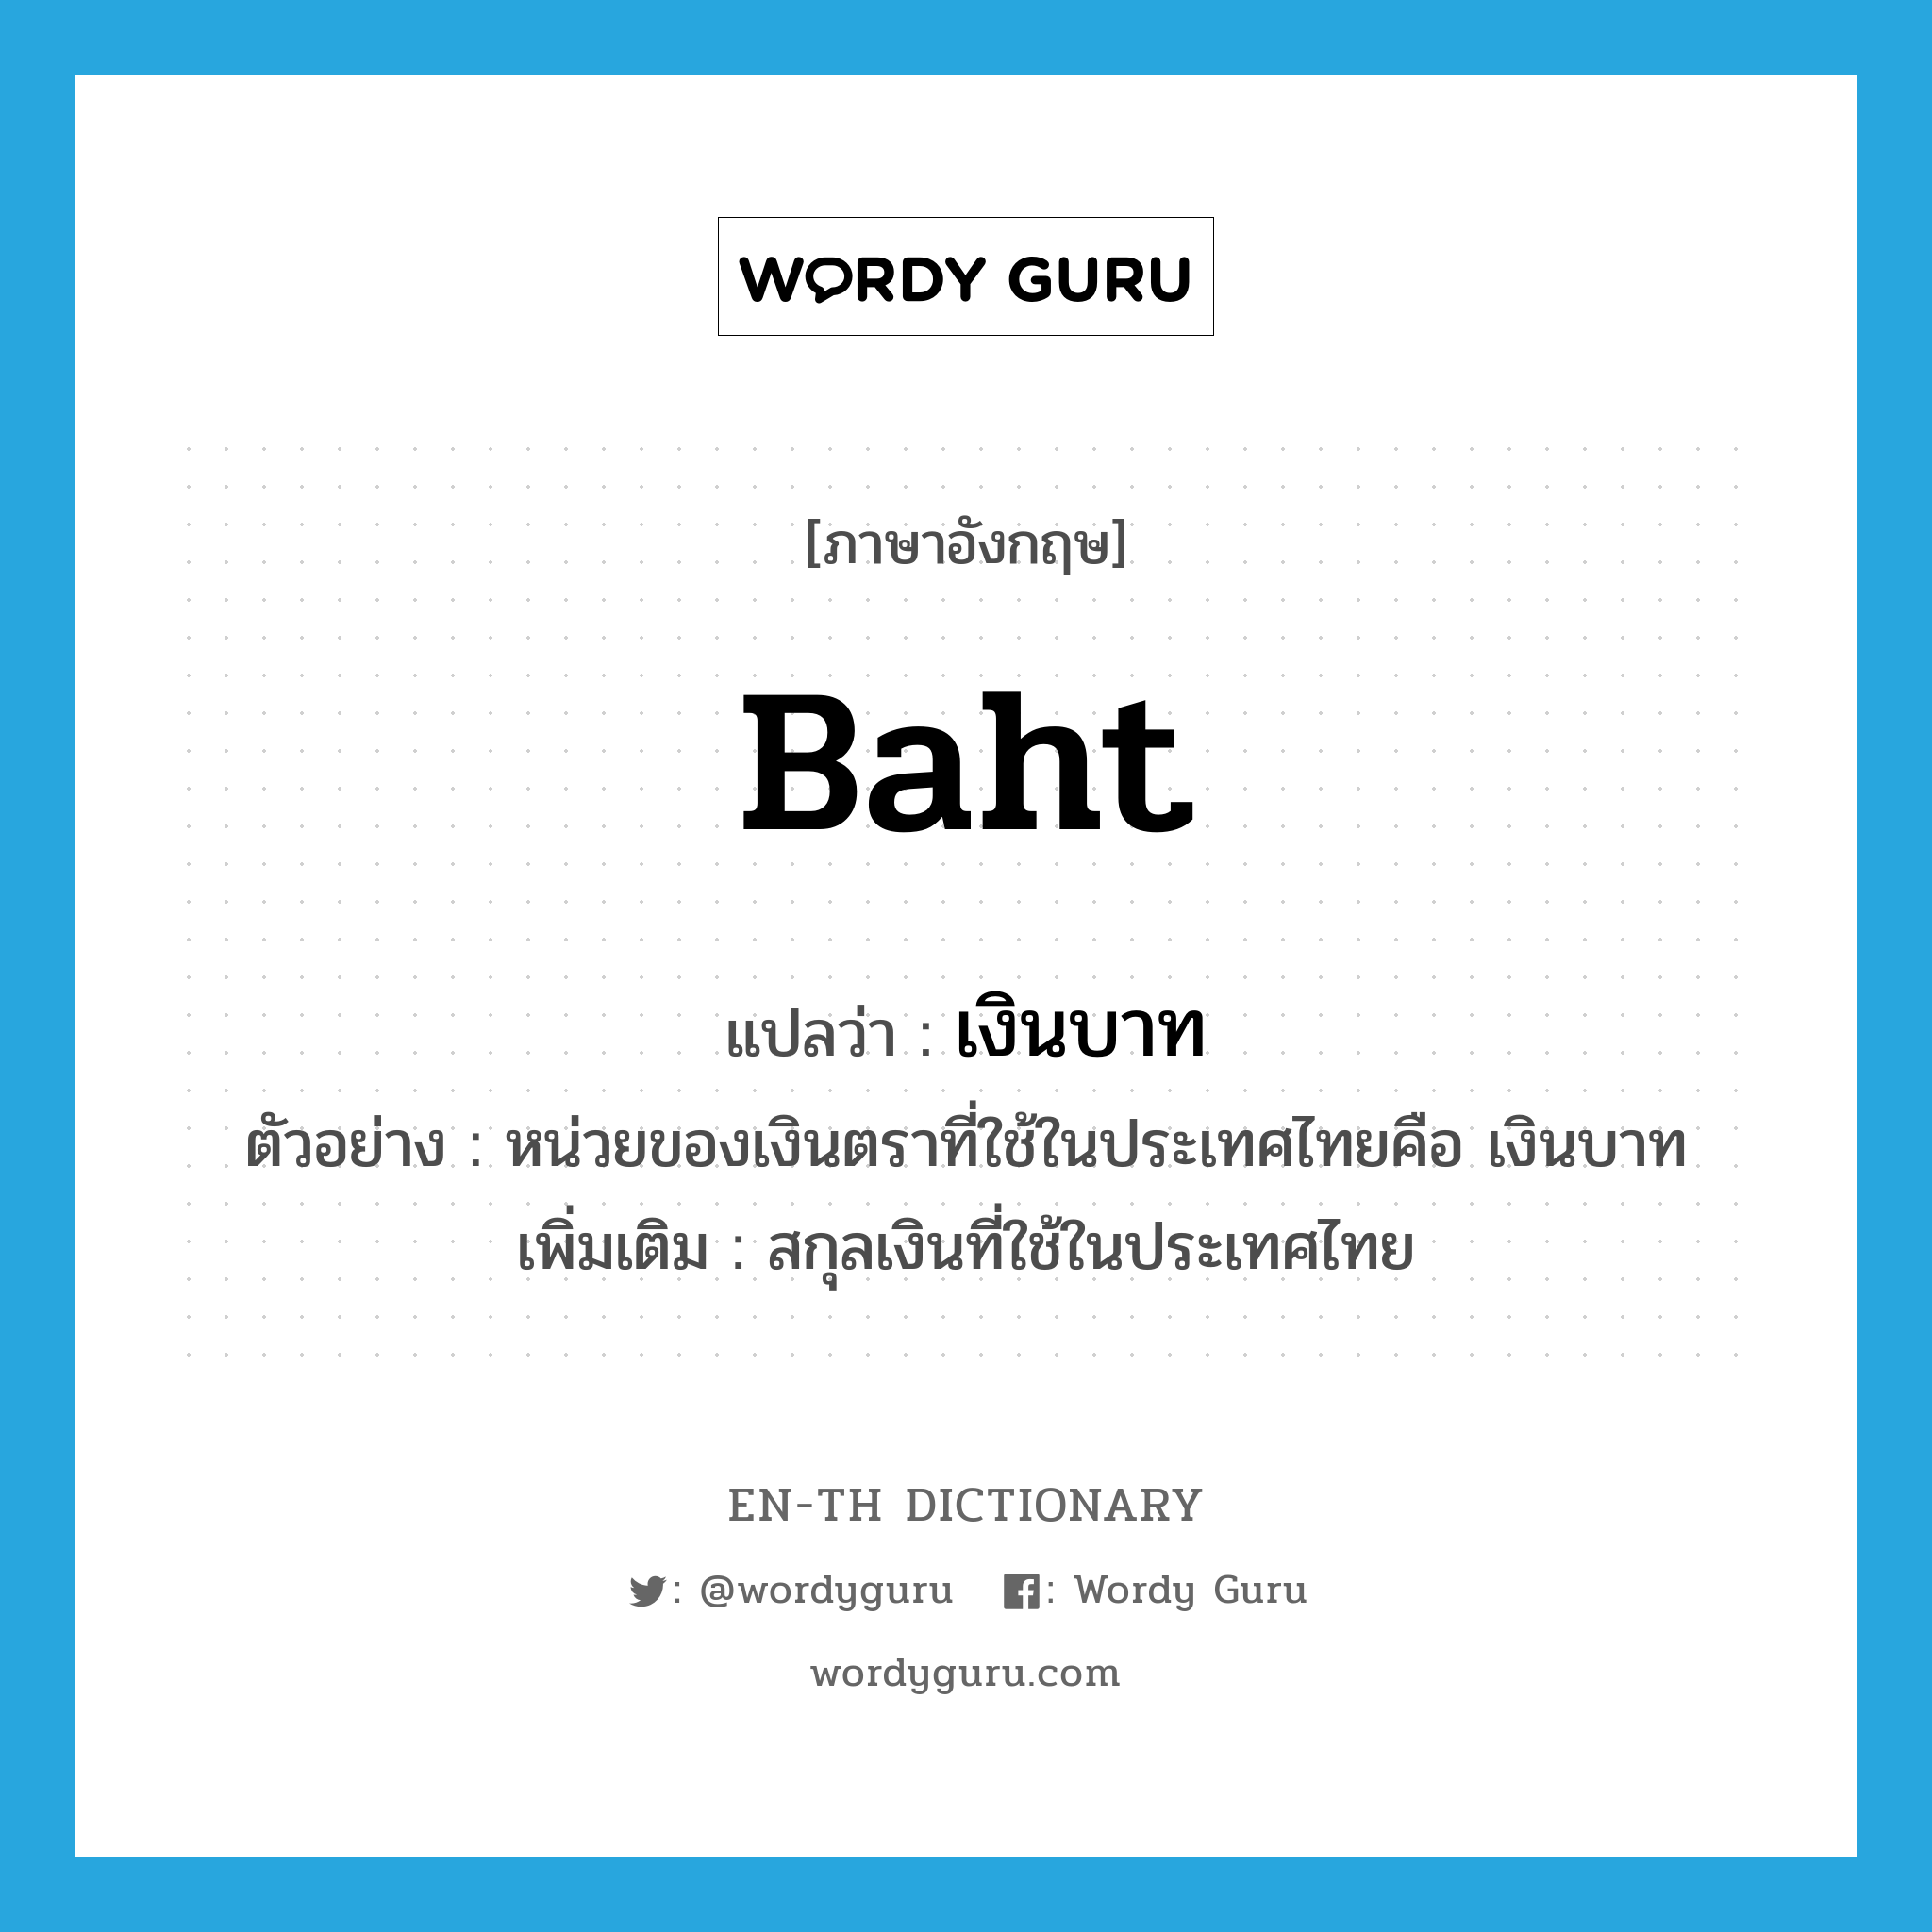 baht แปลว่า?, คำศัพท์ภาษาอังกฤษ baht แปลว่า เงินบาท ประเภท N ตัวอย่าง หน่วยของเงินตราที่ใช้ในประเทศไทยคือ เงินบาท เพิ่มเติม สกุลเงินที่ใช้ในประเทศไทย หมวด N